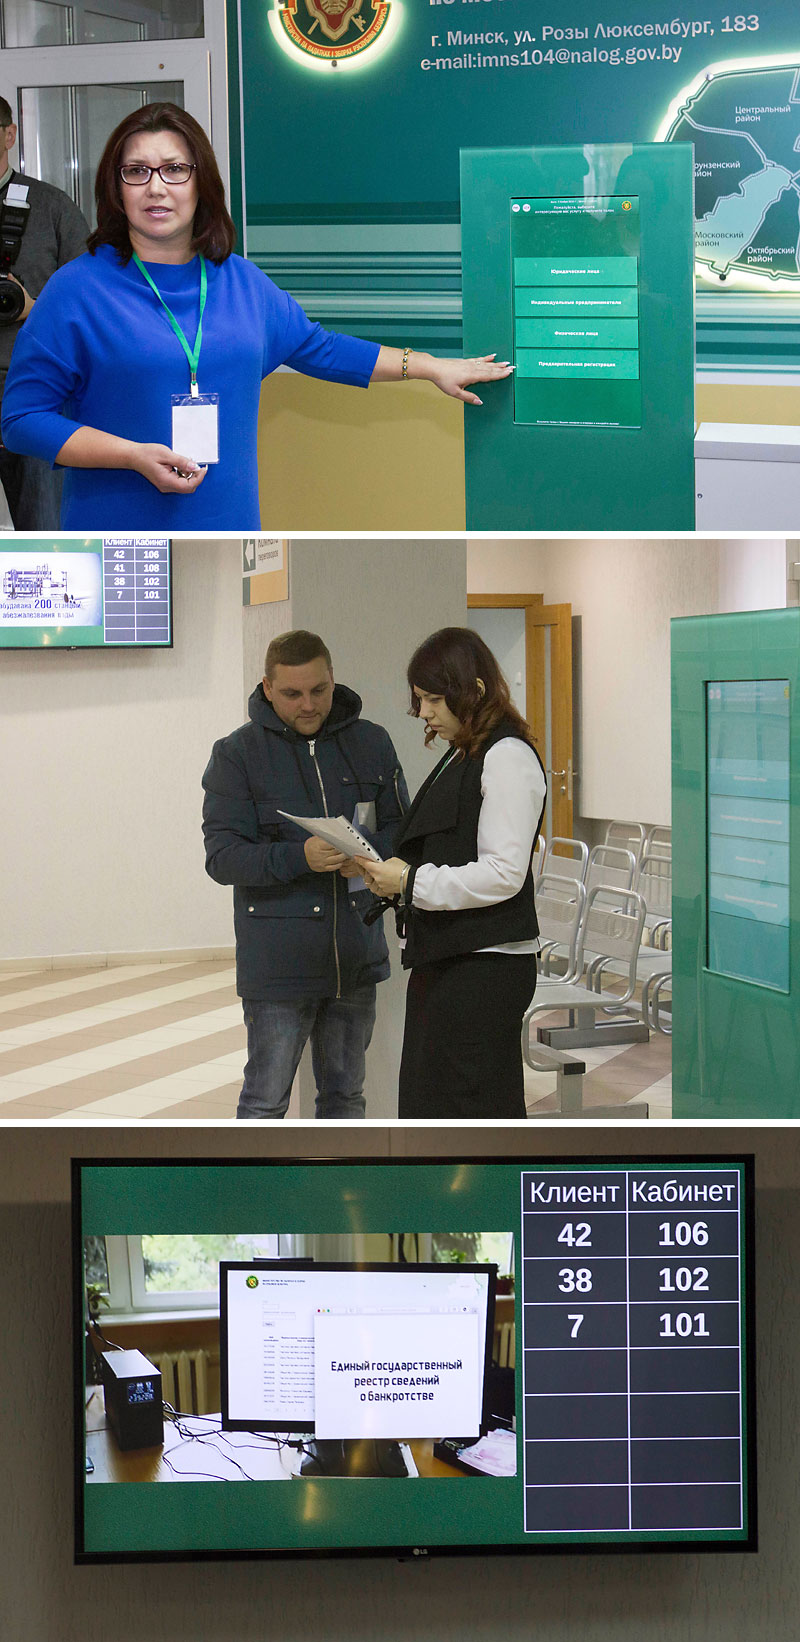 Taxpayer service center, Minsk